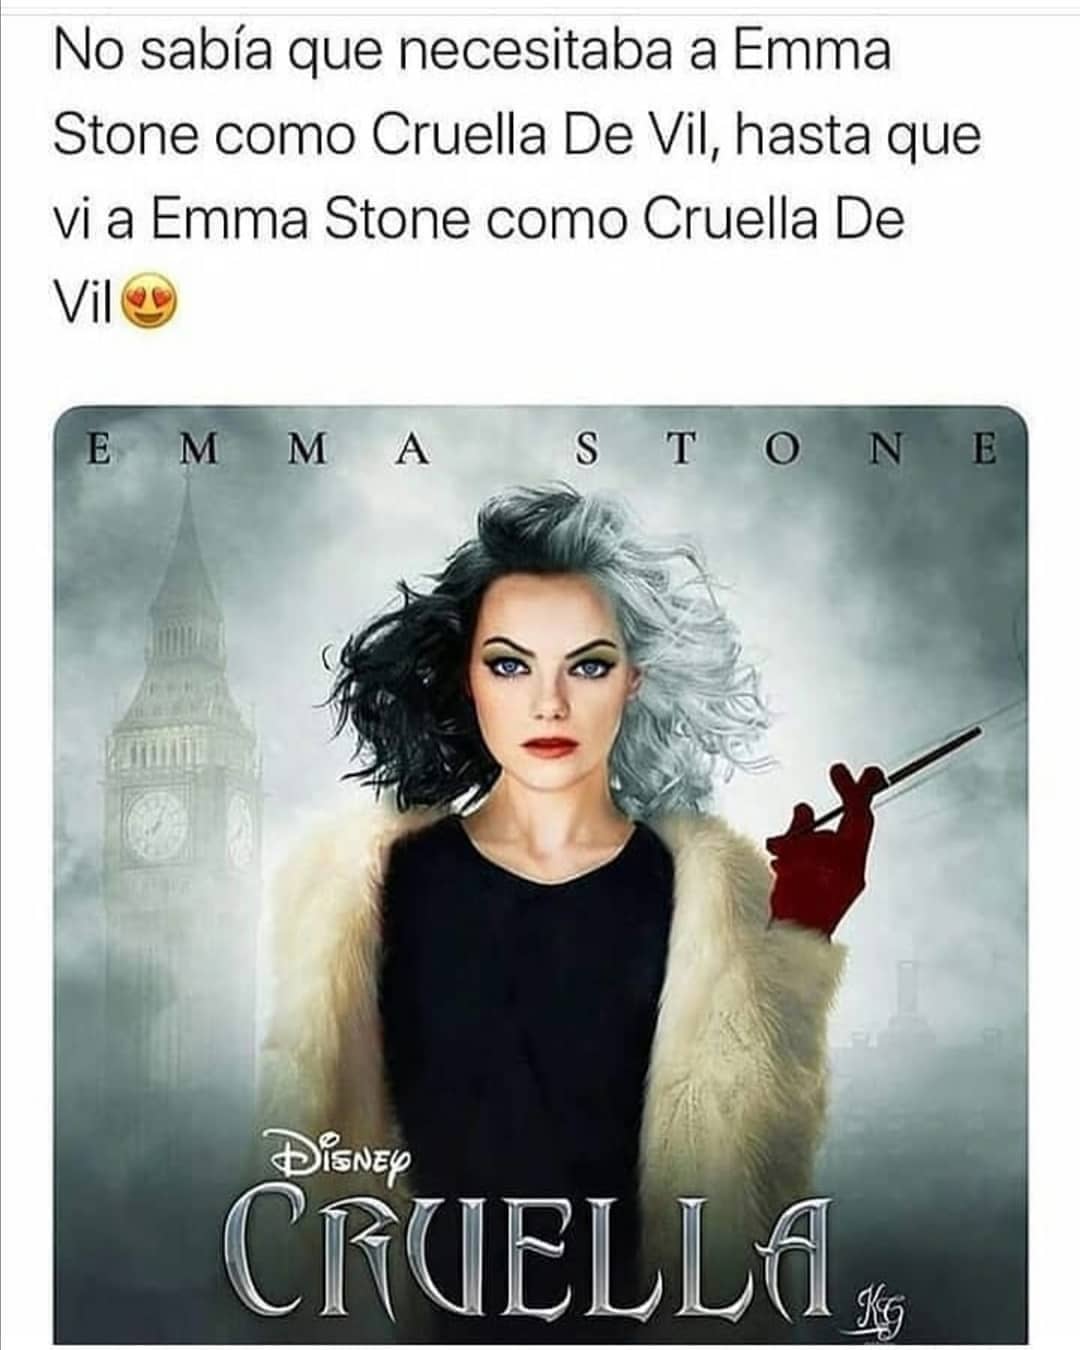 No sabía que necesitaba a Emma Stone como Cruella De Vil, hasta que vi a Emma Stone como Cruella de Vil.